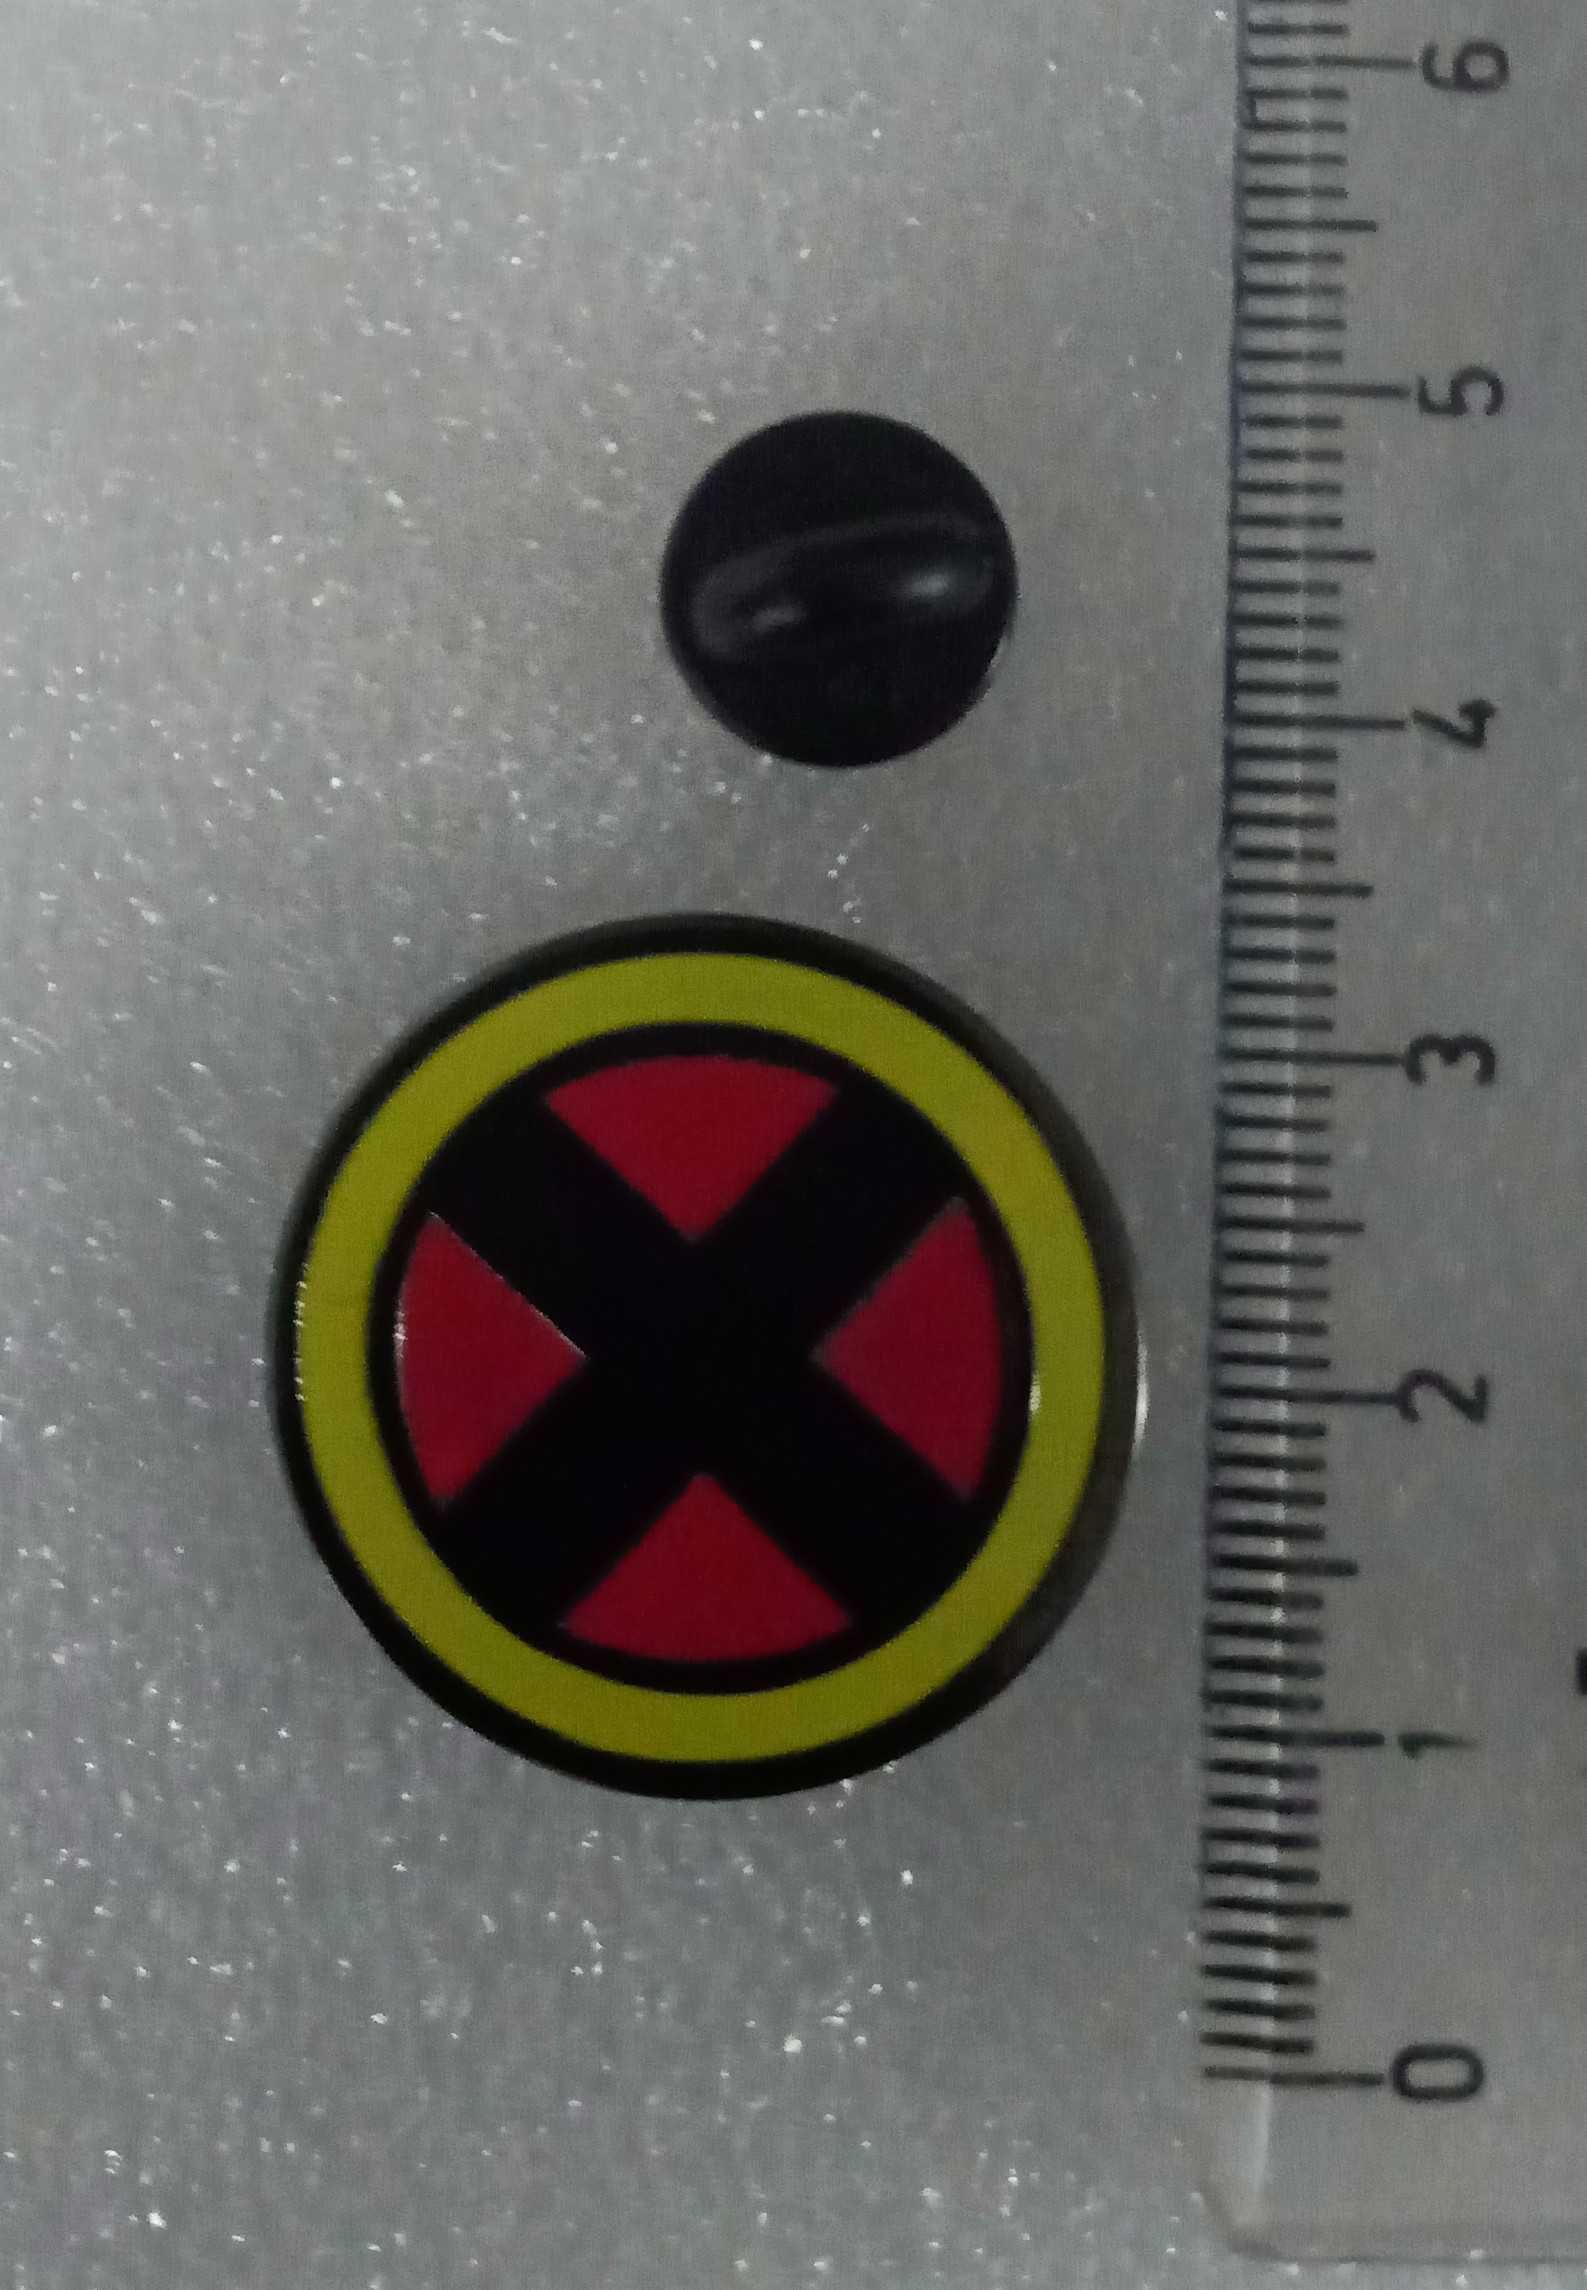 Colecção X-Men  (6 pins)